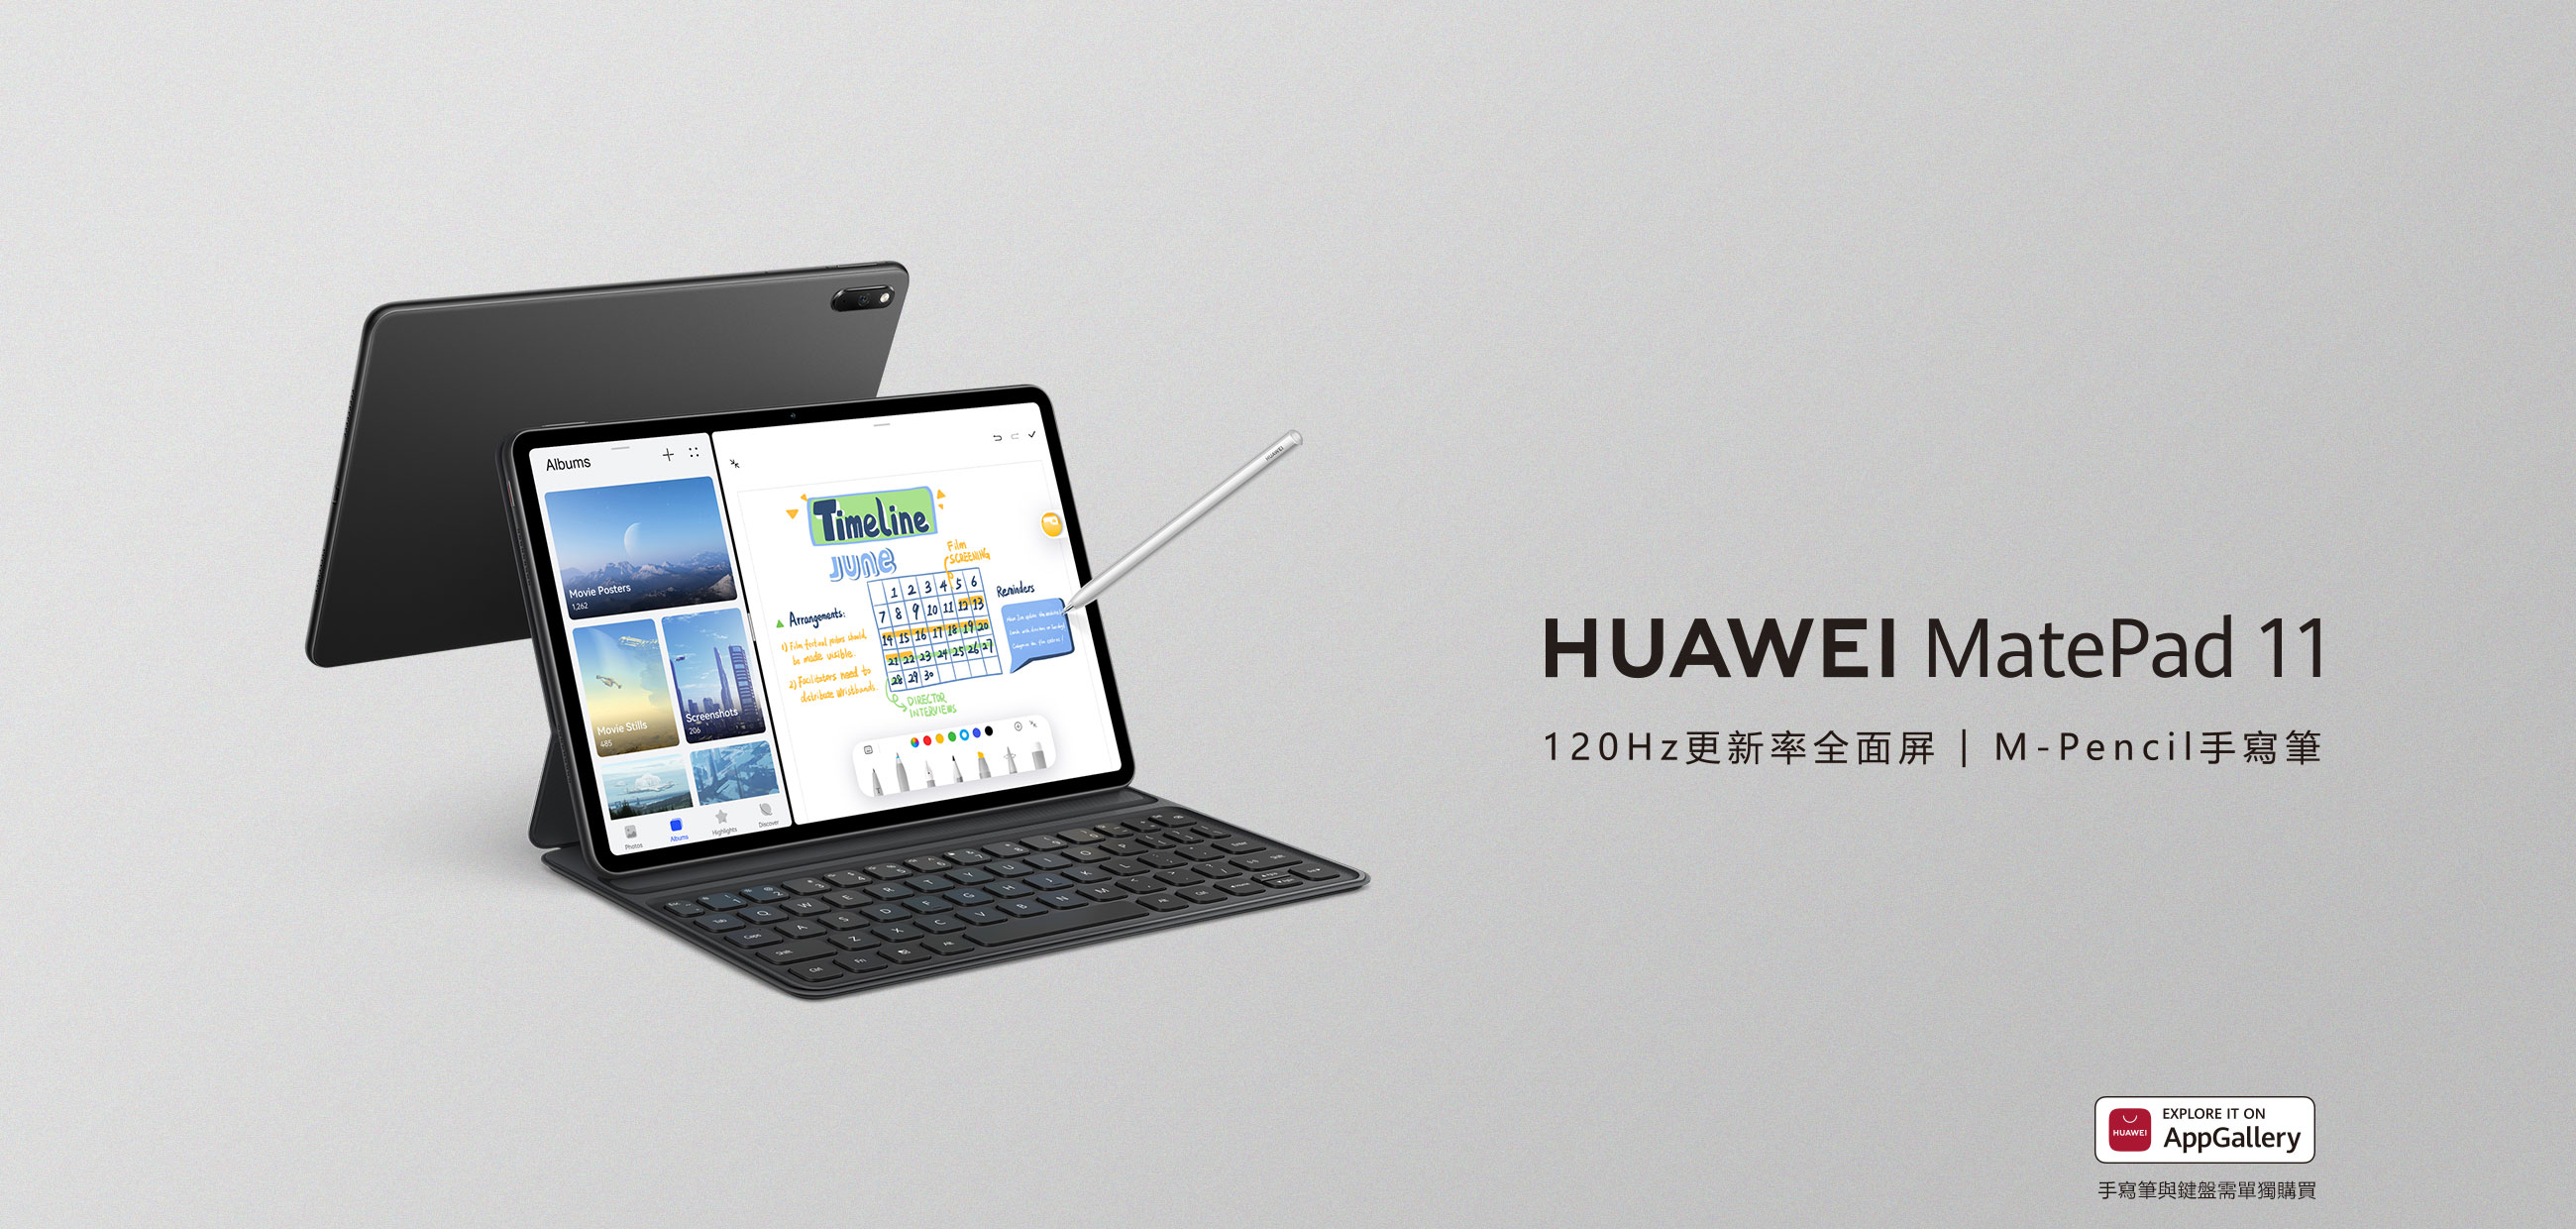 規格參數| HUAWEI MatePad 11 | 華為台灣活動網站